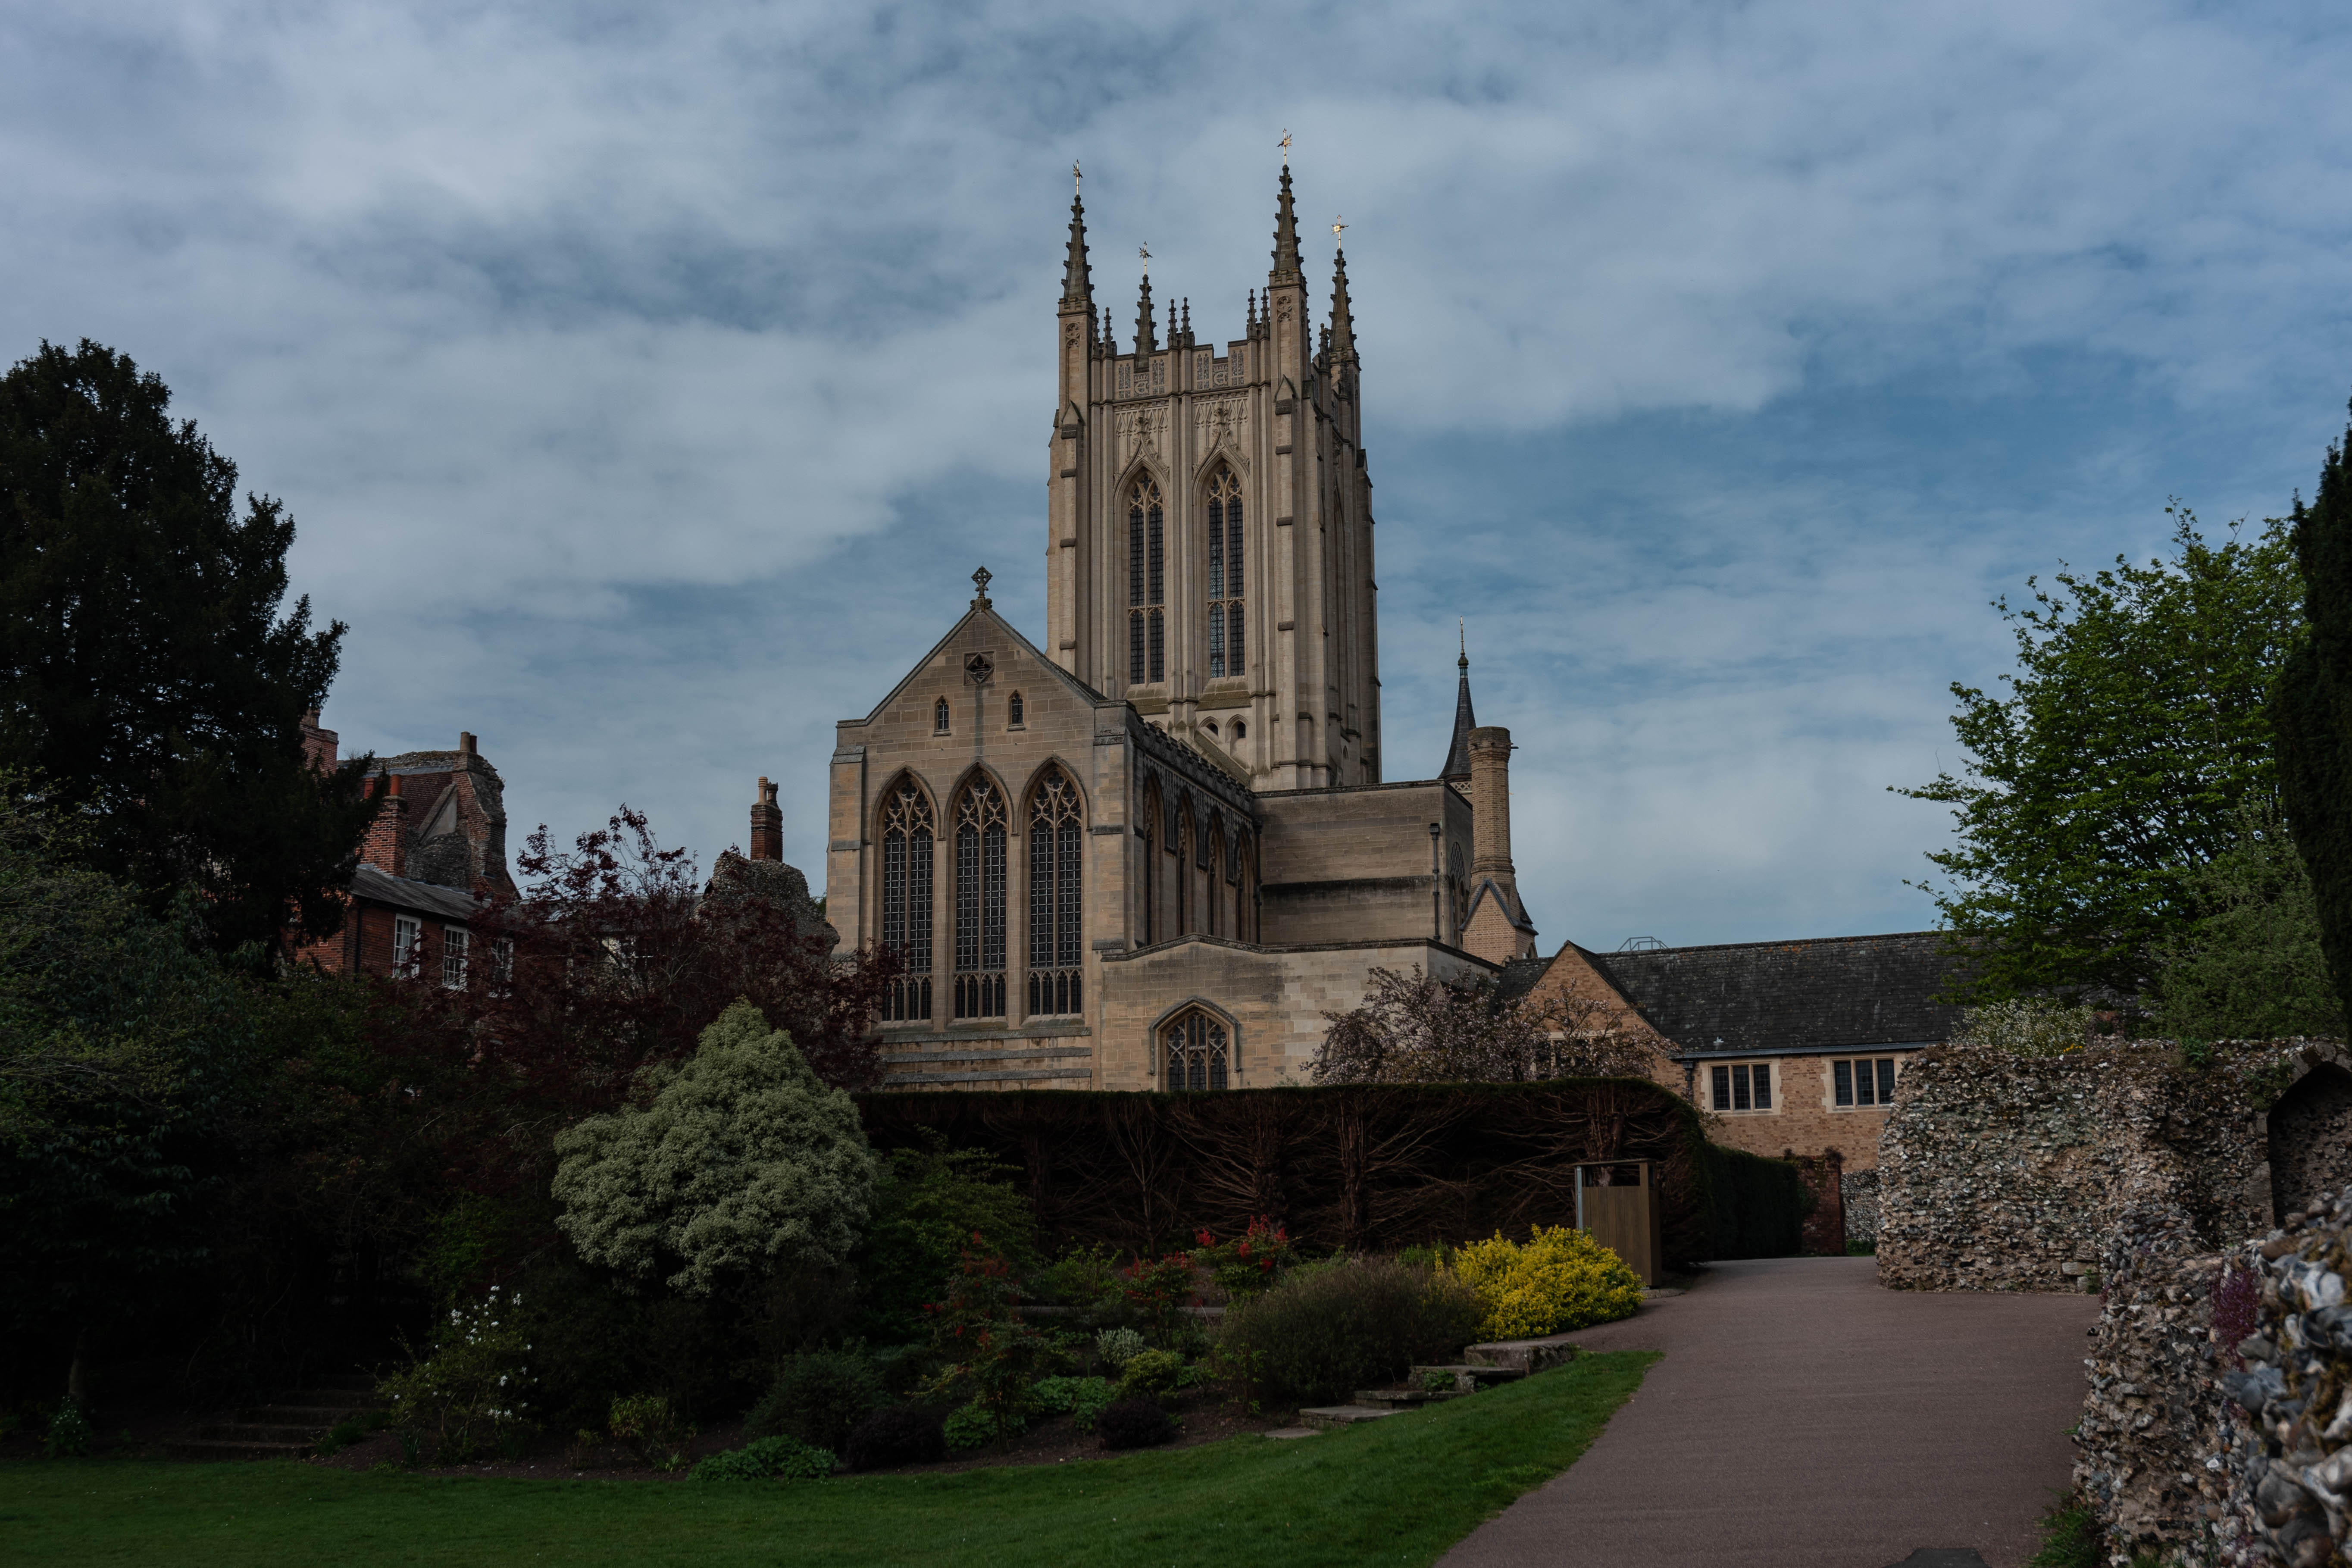 April: St. Edmundsbury Cathedral, Bury St. Edmunds